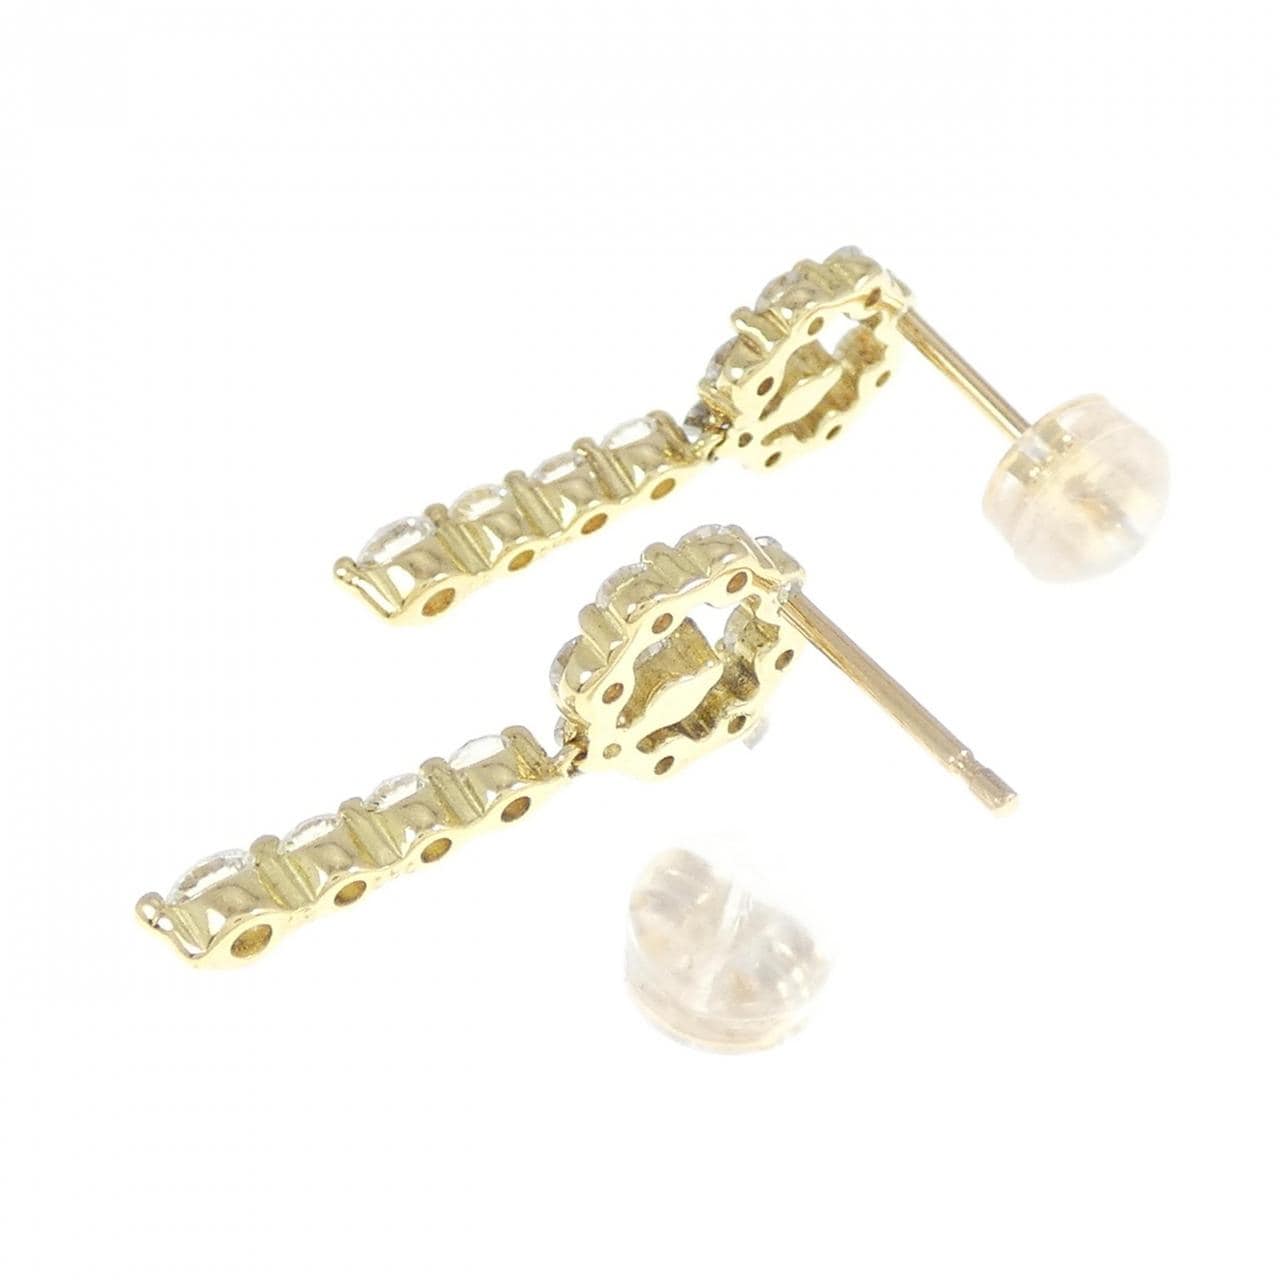 K18YG Diamond earrings 1.00CT